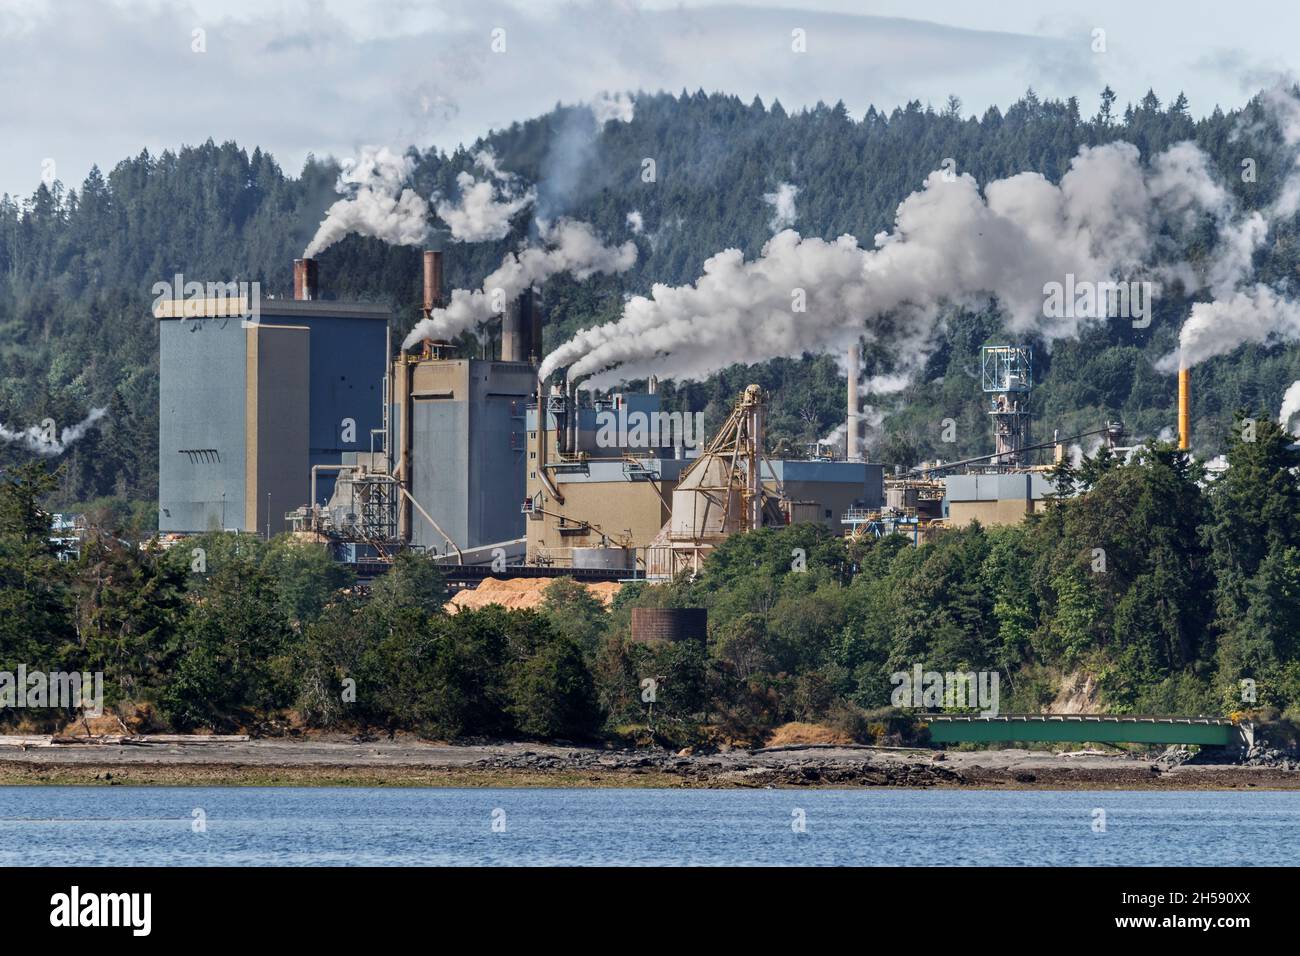 Des fours à fumée provenant des cheminées de l'usine de pâtes et papiers de Crofton, située sur le front de mer dans le sud de l'île de Vancouver, en Colombie-Britannique. Banque D'Images